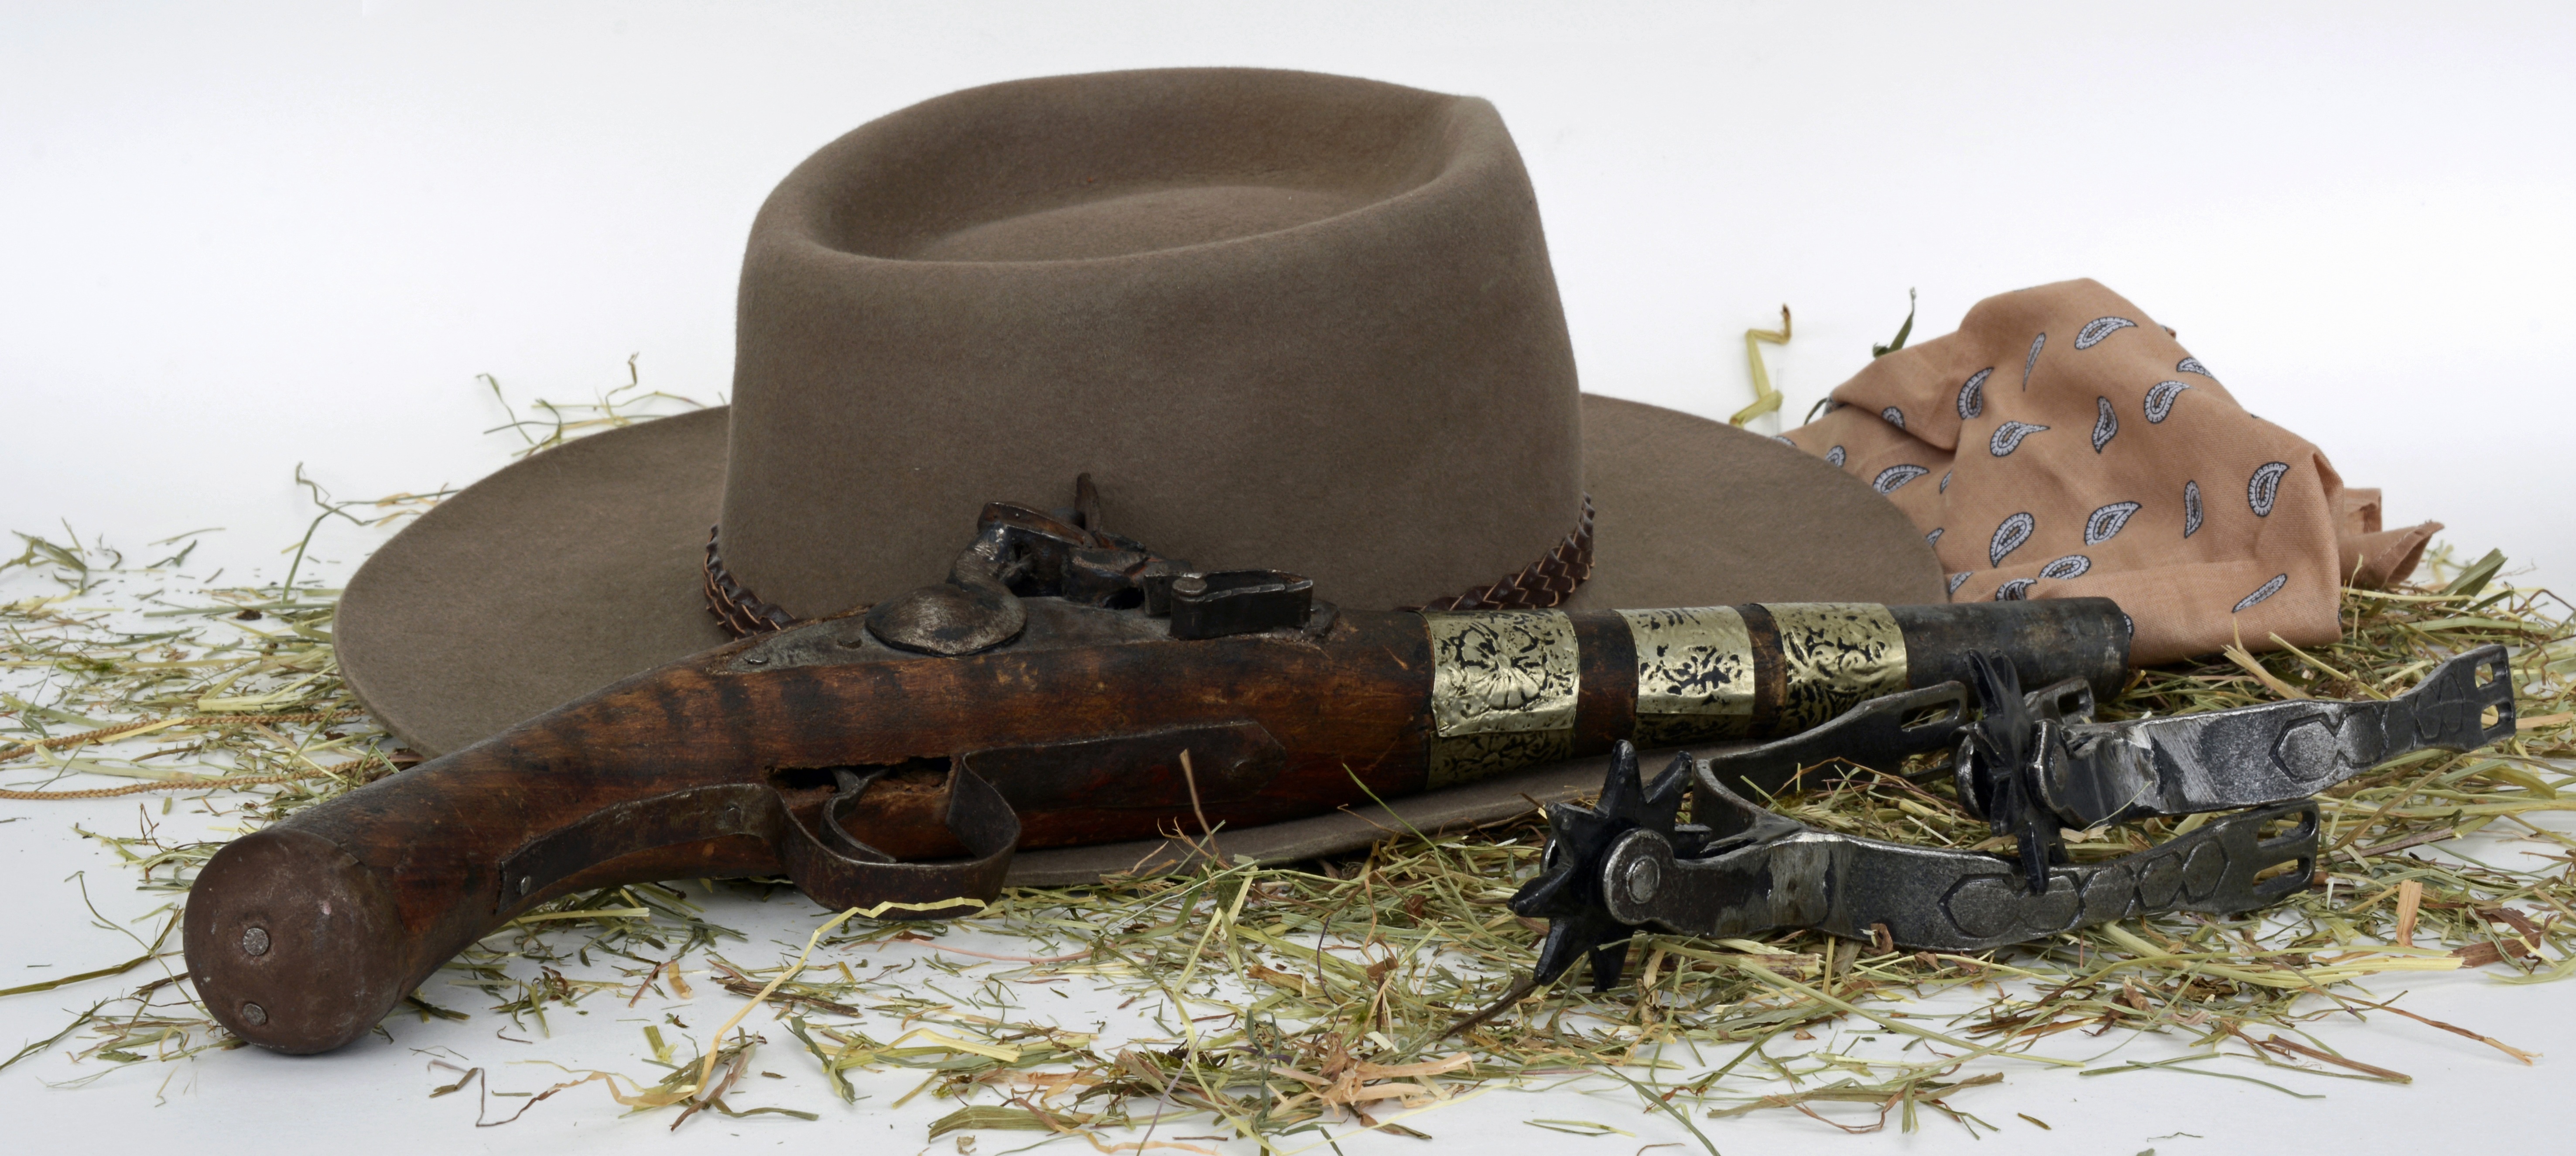 Pistol Antique Vintage Gun Hat Weapon Still Life 5905x2649